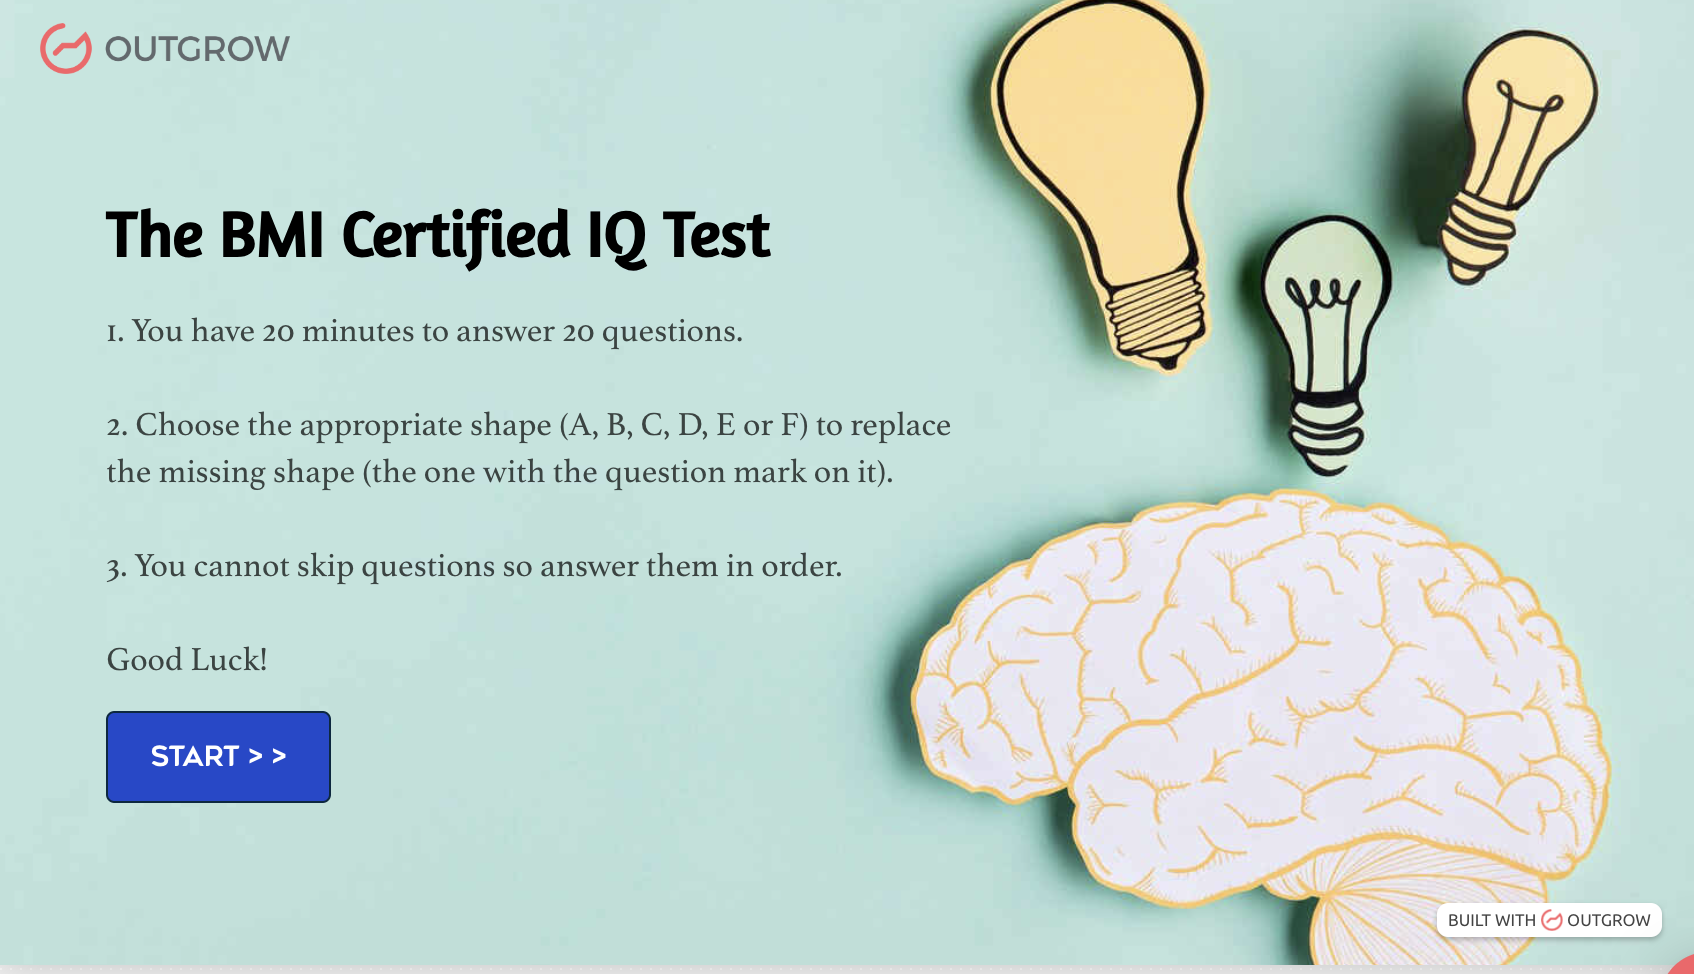 The BMI Certified IQ Test